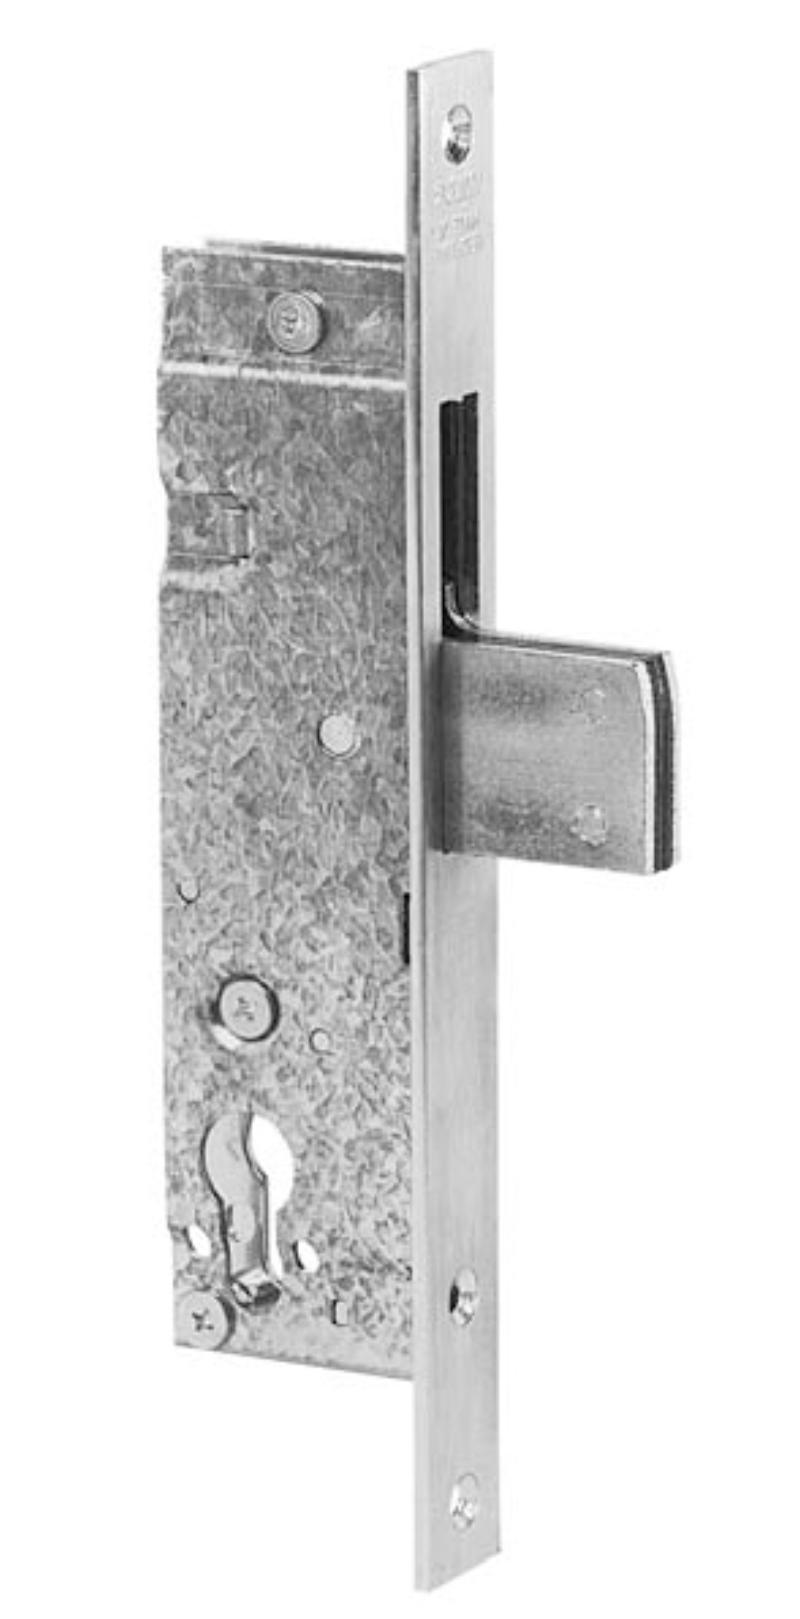 Wilka swing bolt lock 1435